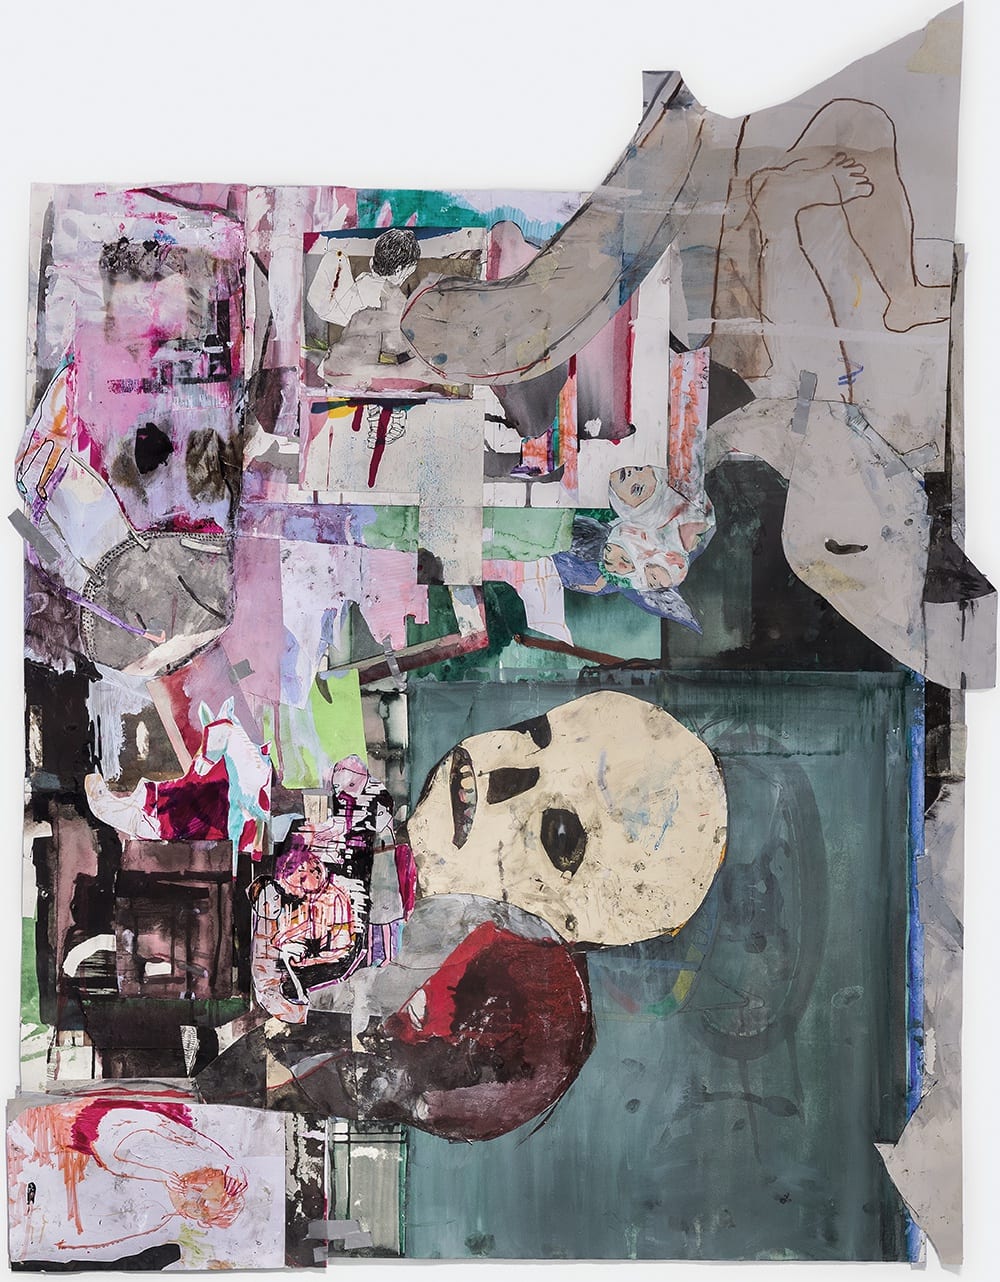 Eduardo Berliner, Juntando pedaços [Putting pieces together], 2020